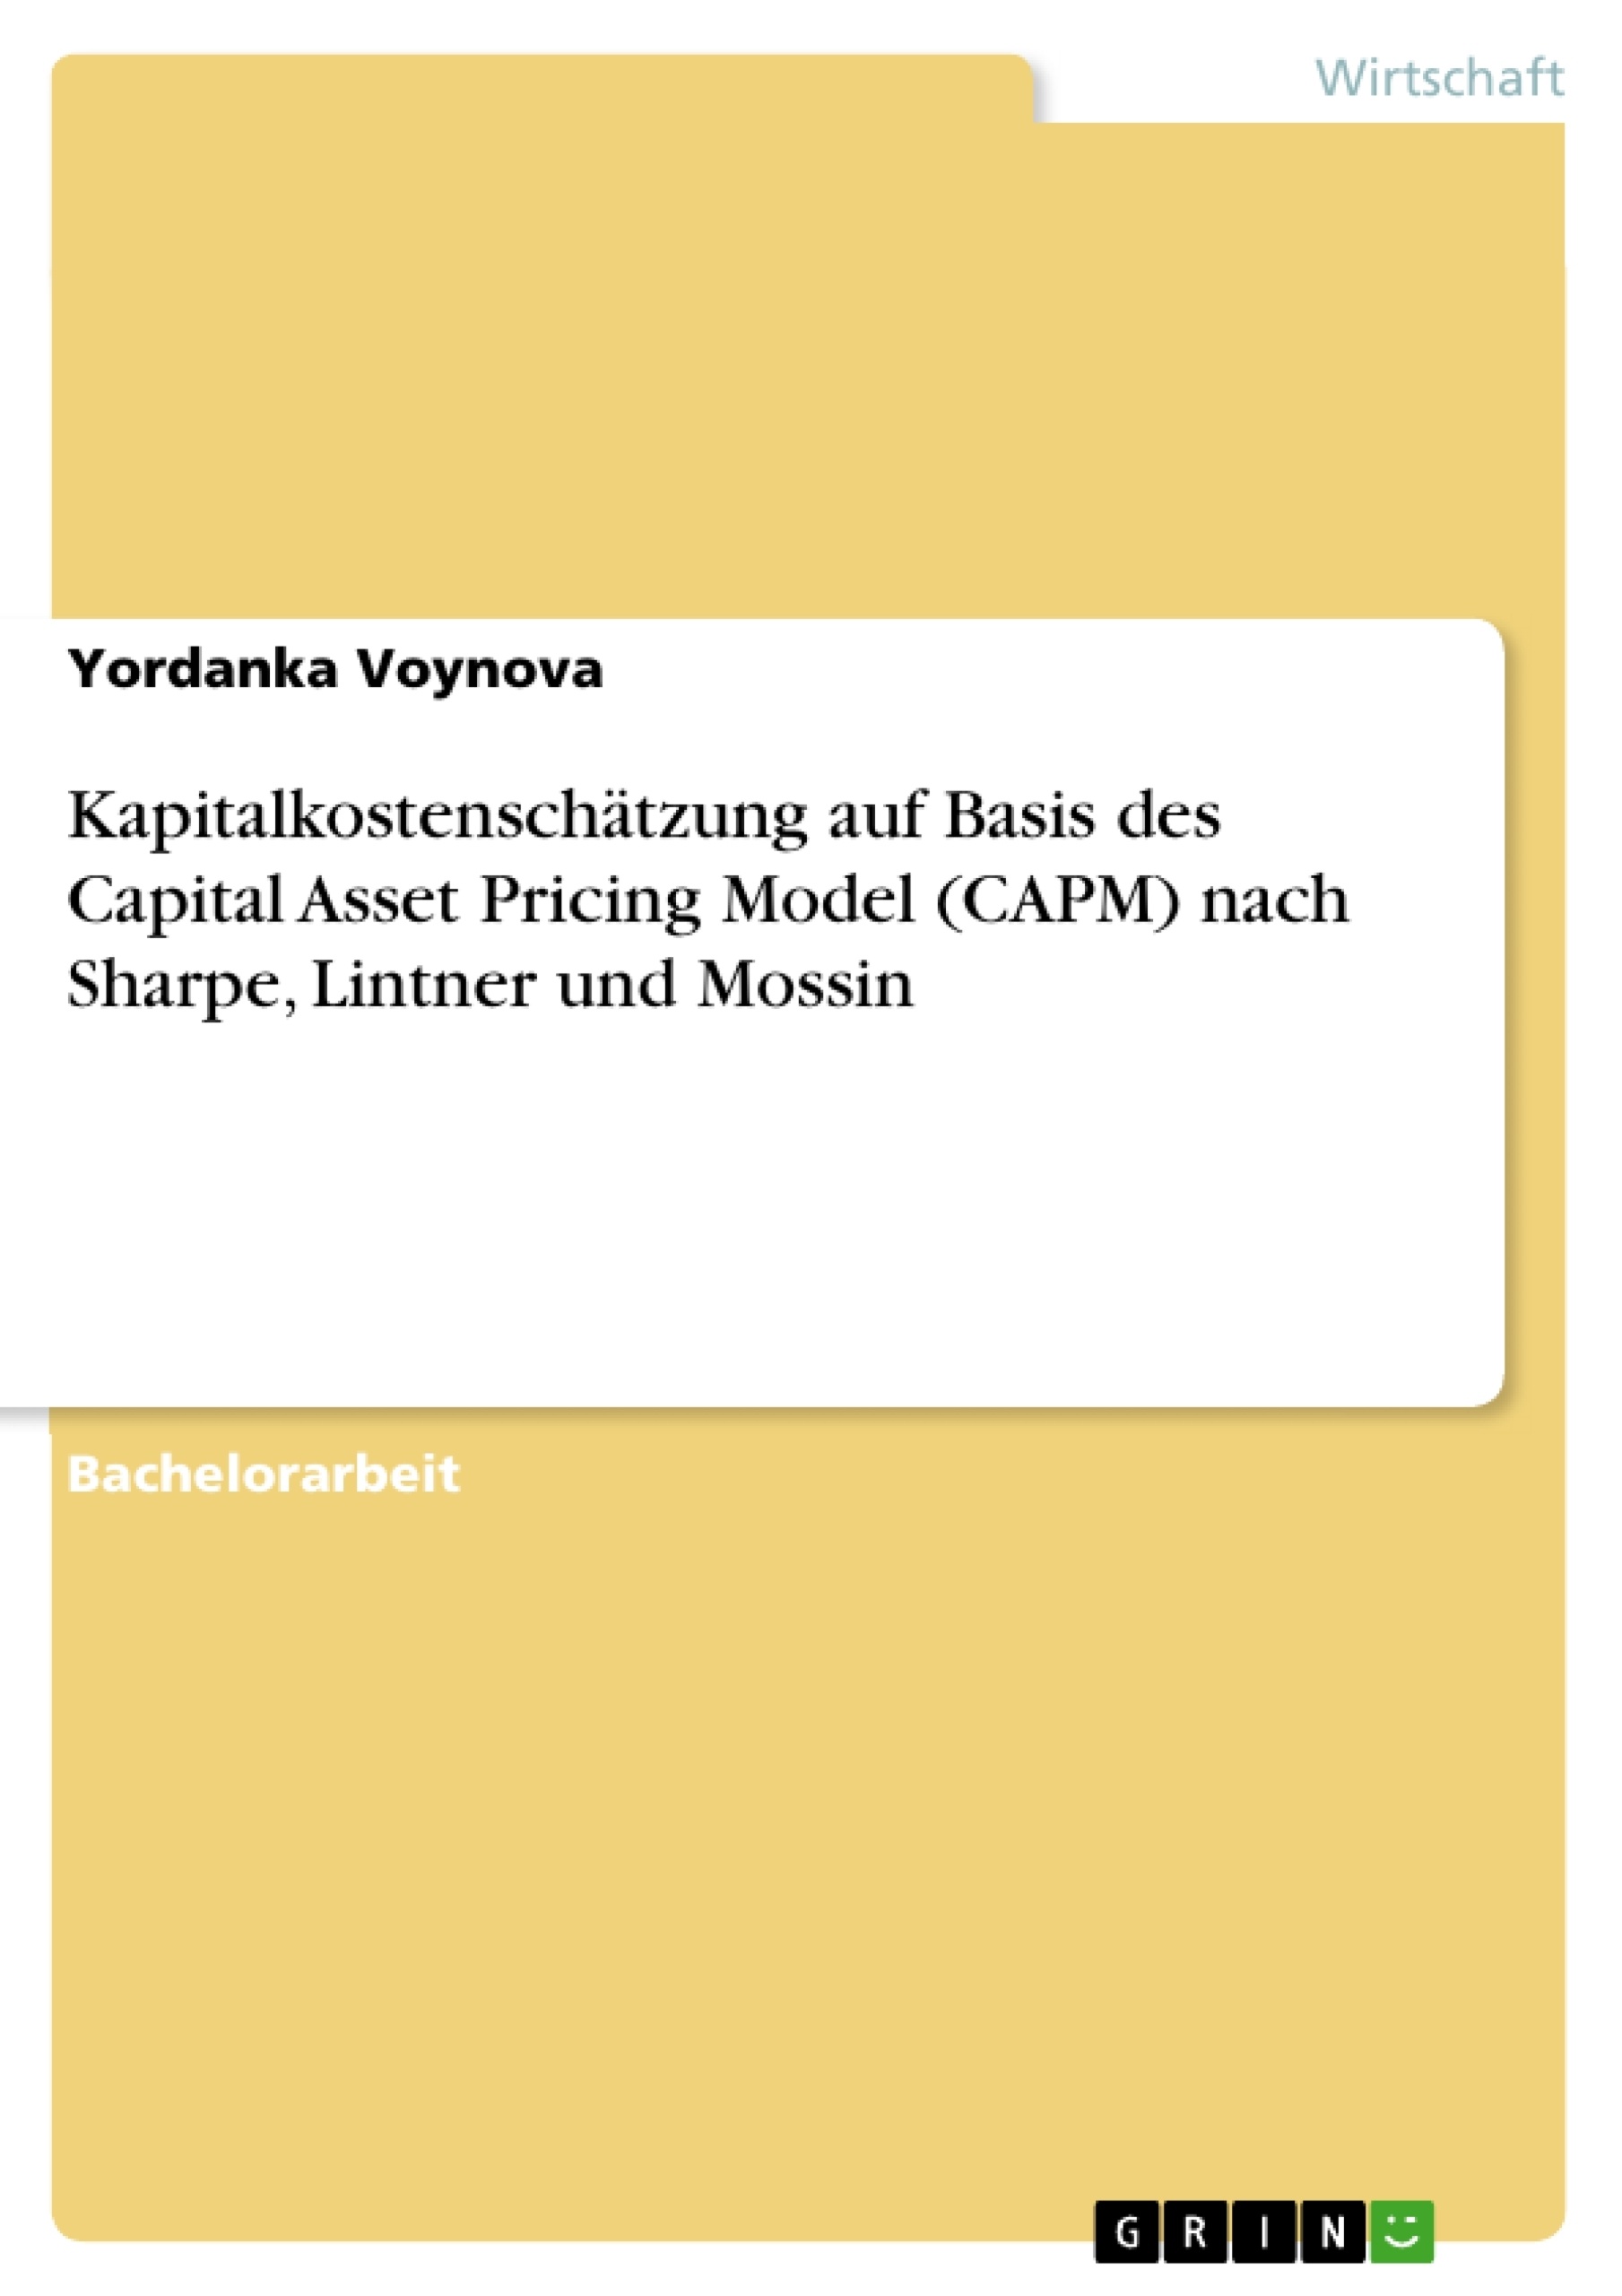 Titre: Kapitalkostenschätzung auf Basis des Capital Asset Pricing Model (CAPM) nach Sharpe, Lintner und Mossin